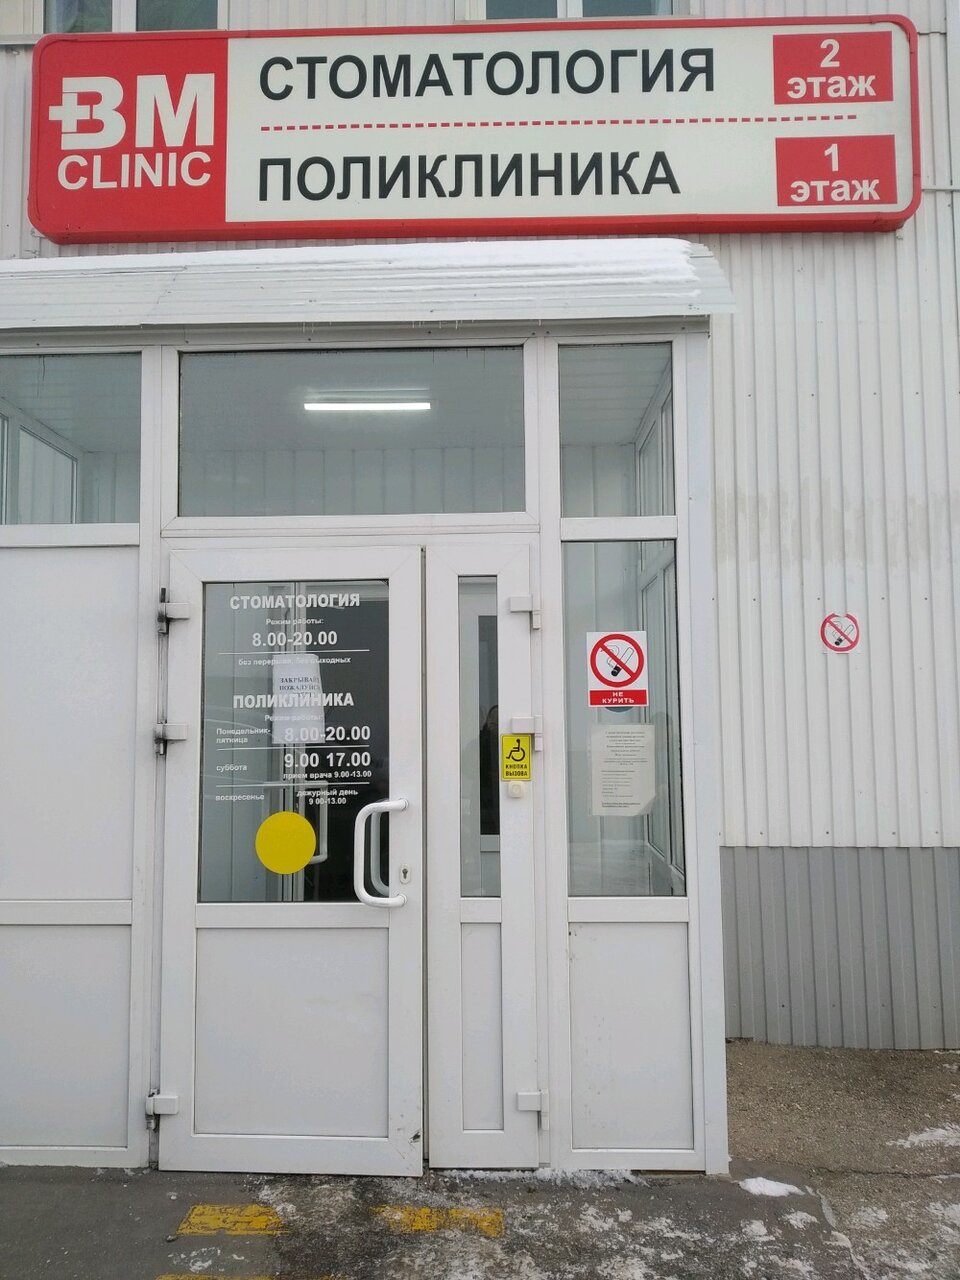 Вм клиник ульяновск новый город адрес